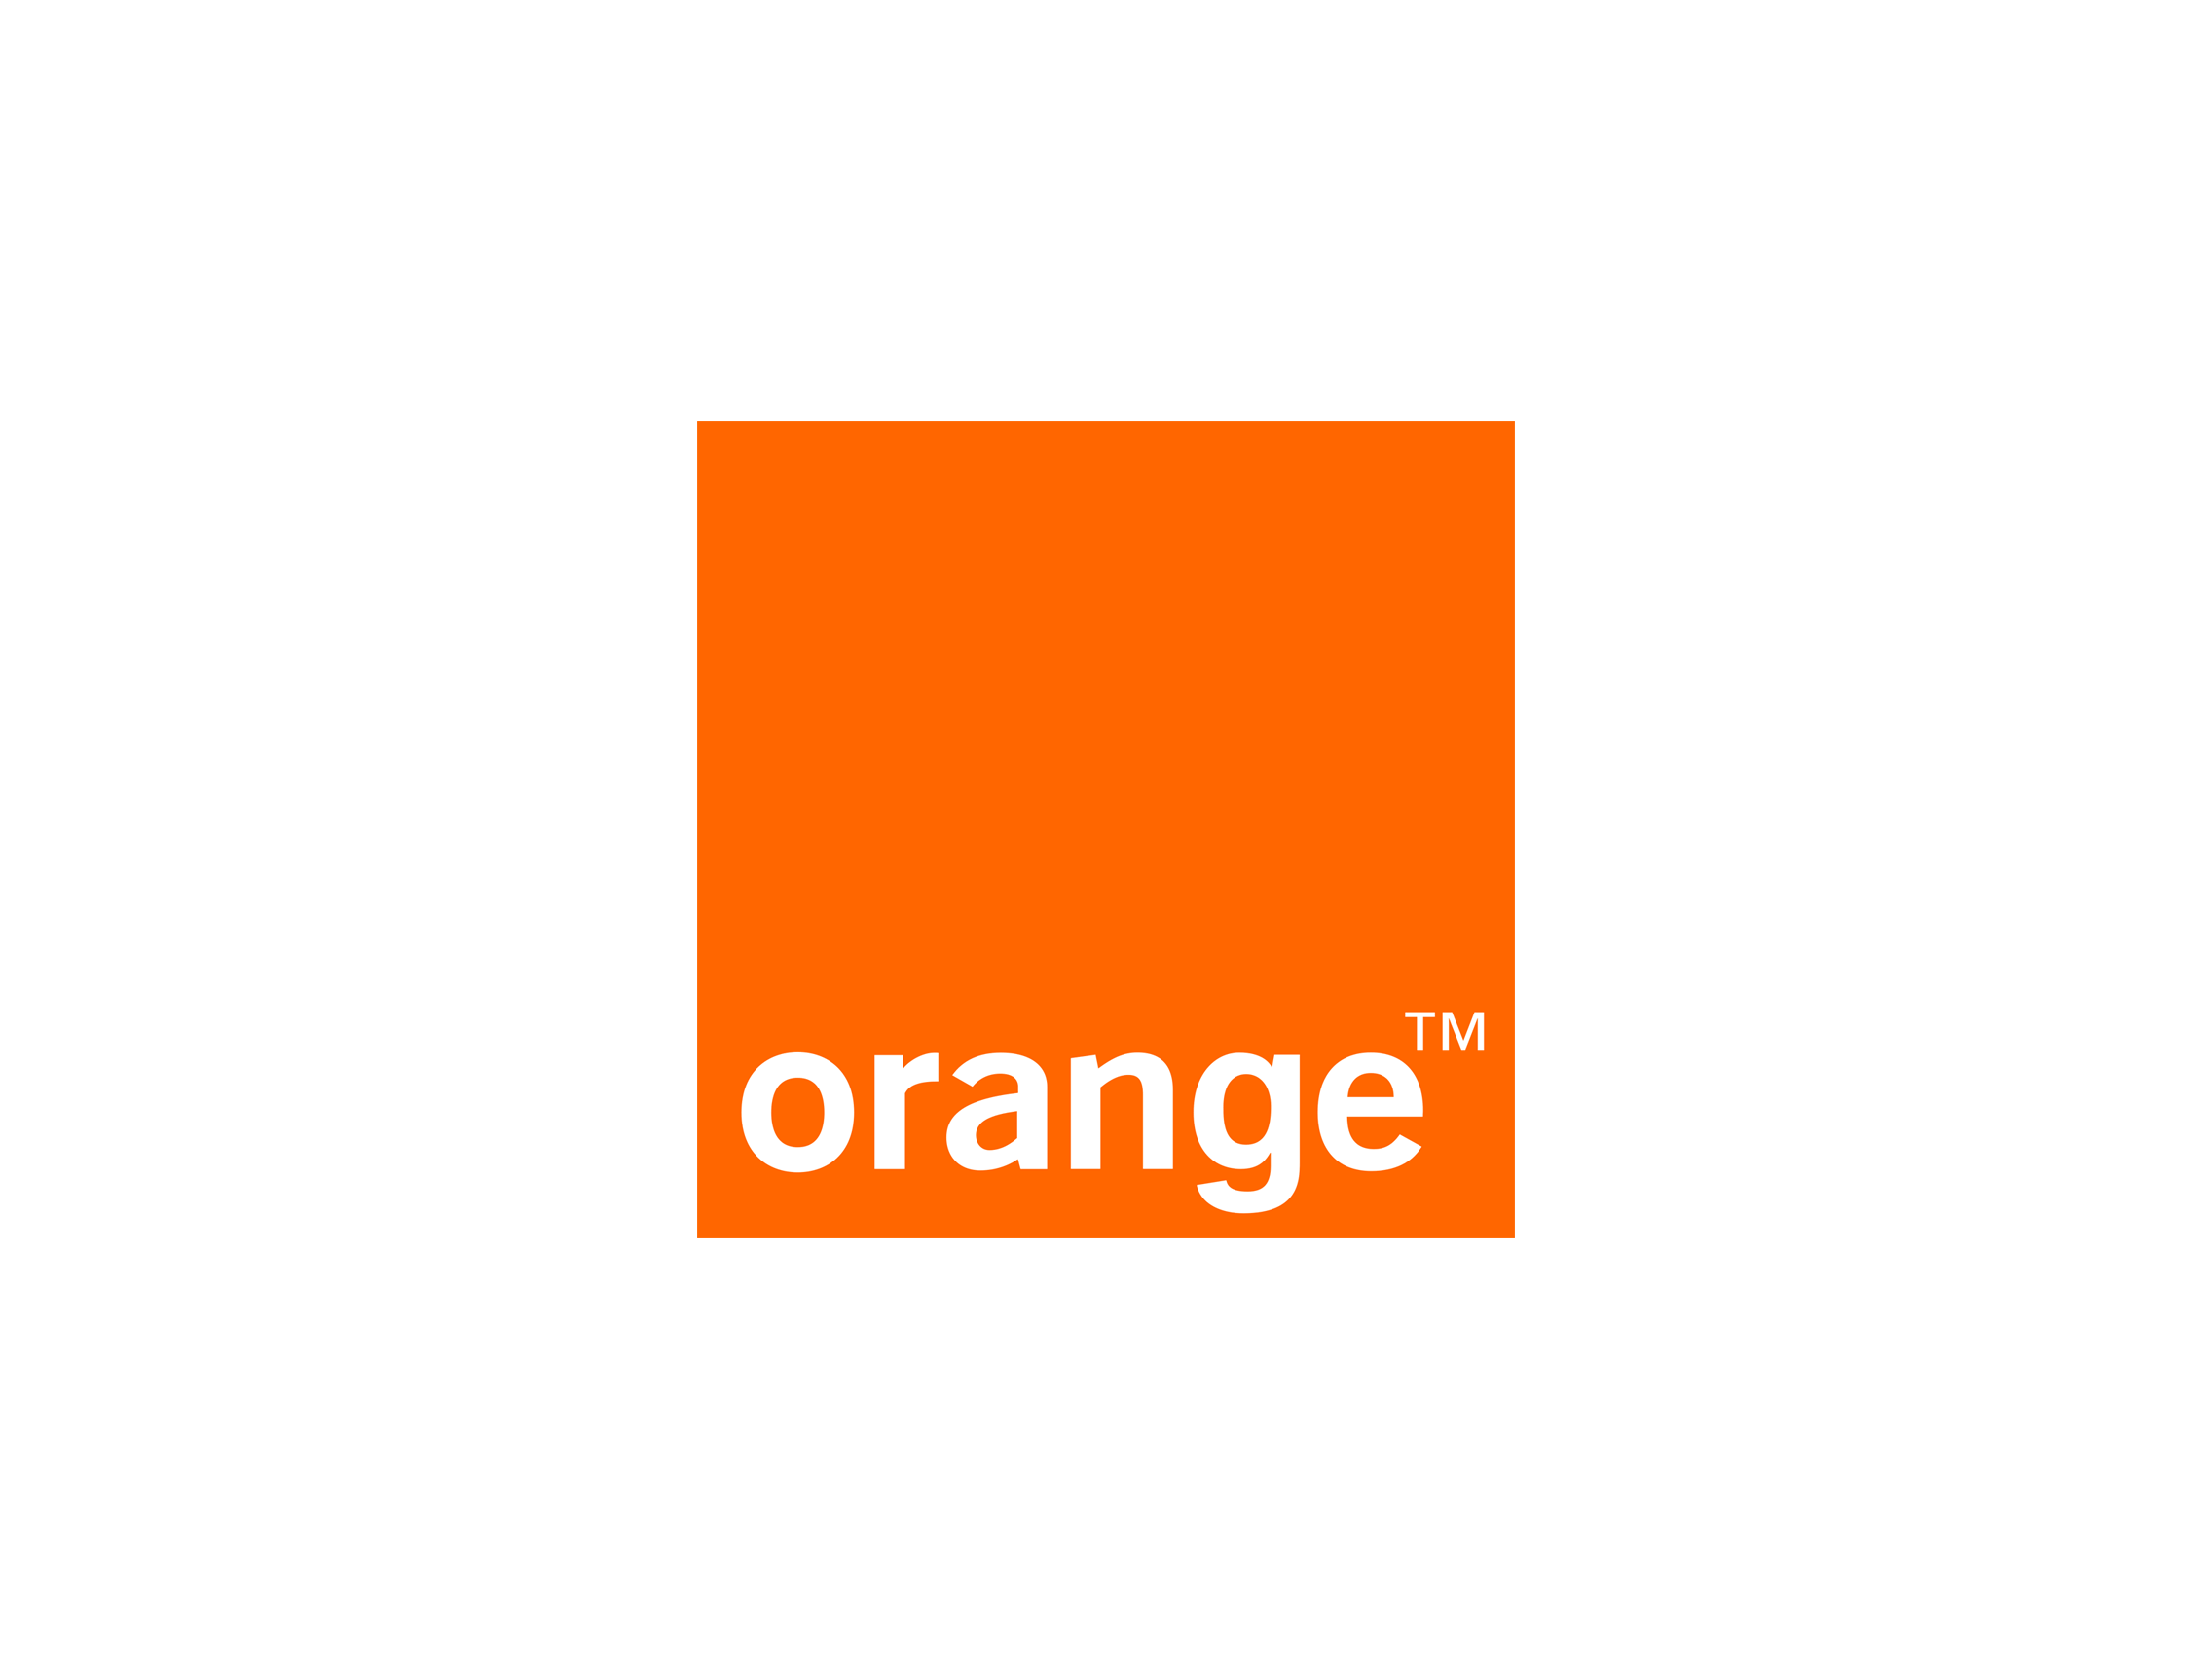 Orange Company Logo - Orange Logos